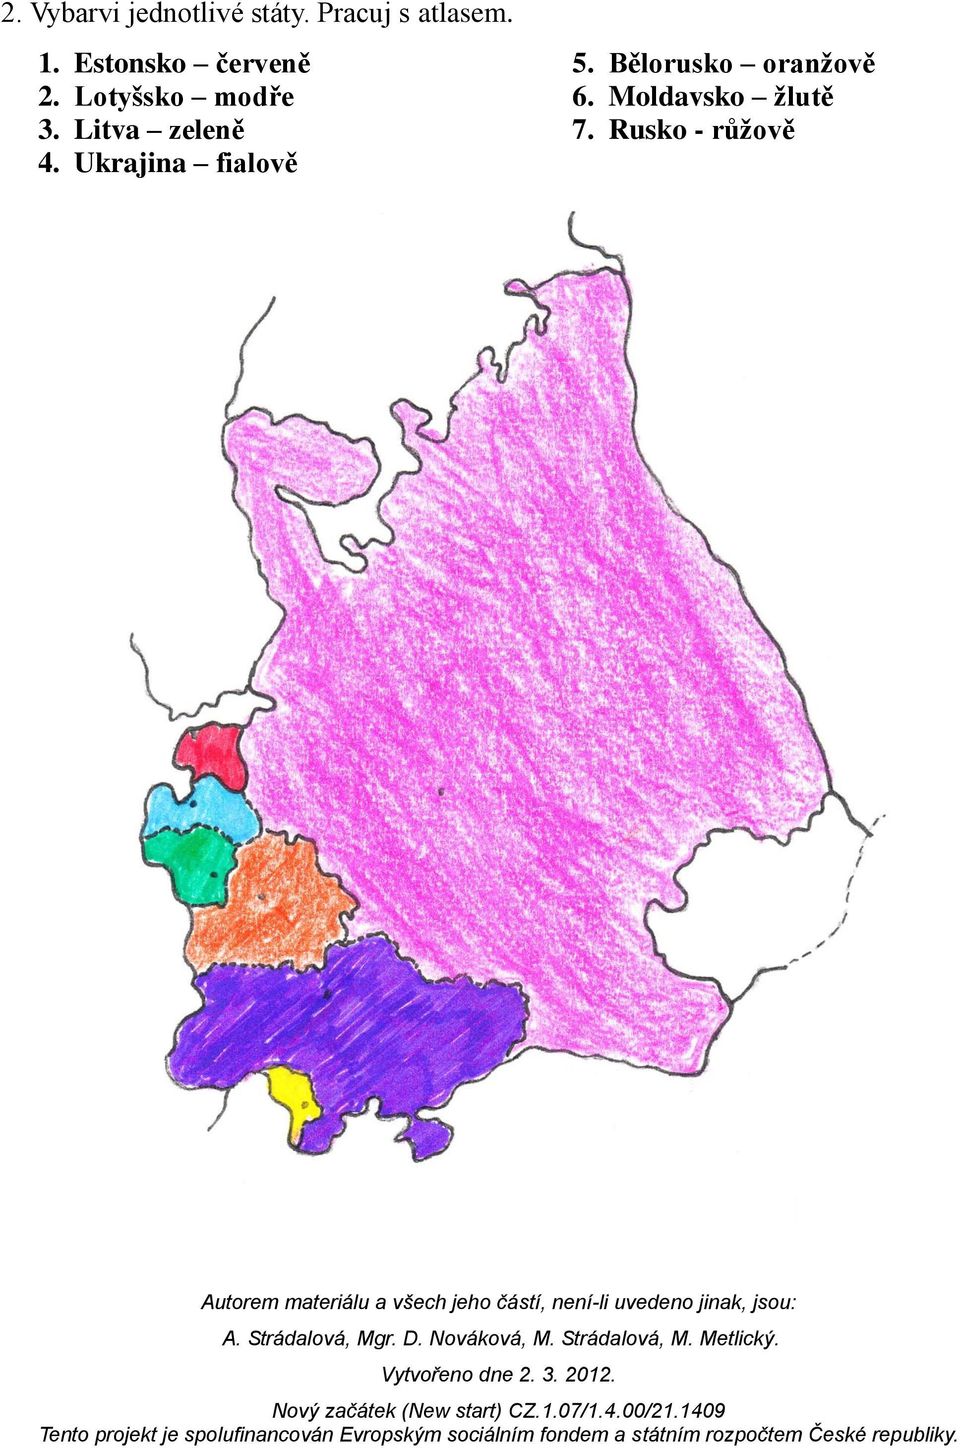 Lotyšsko modře 3. Litva zeleně 4.